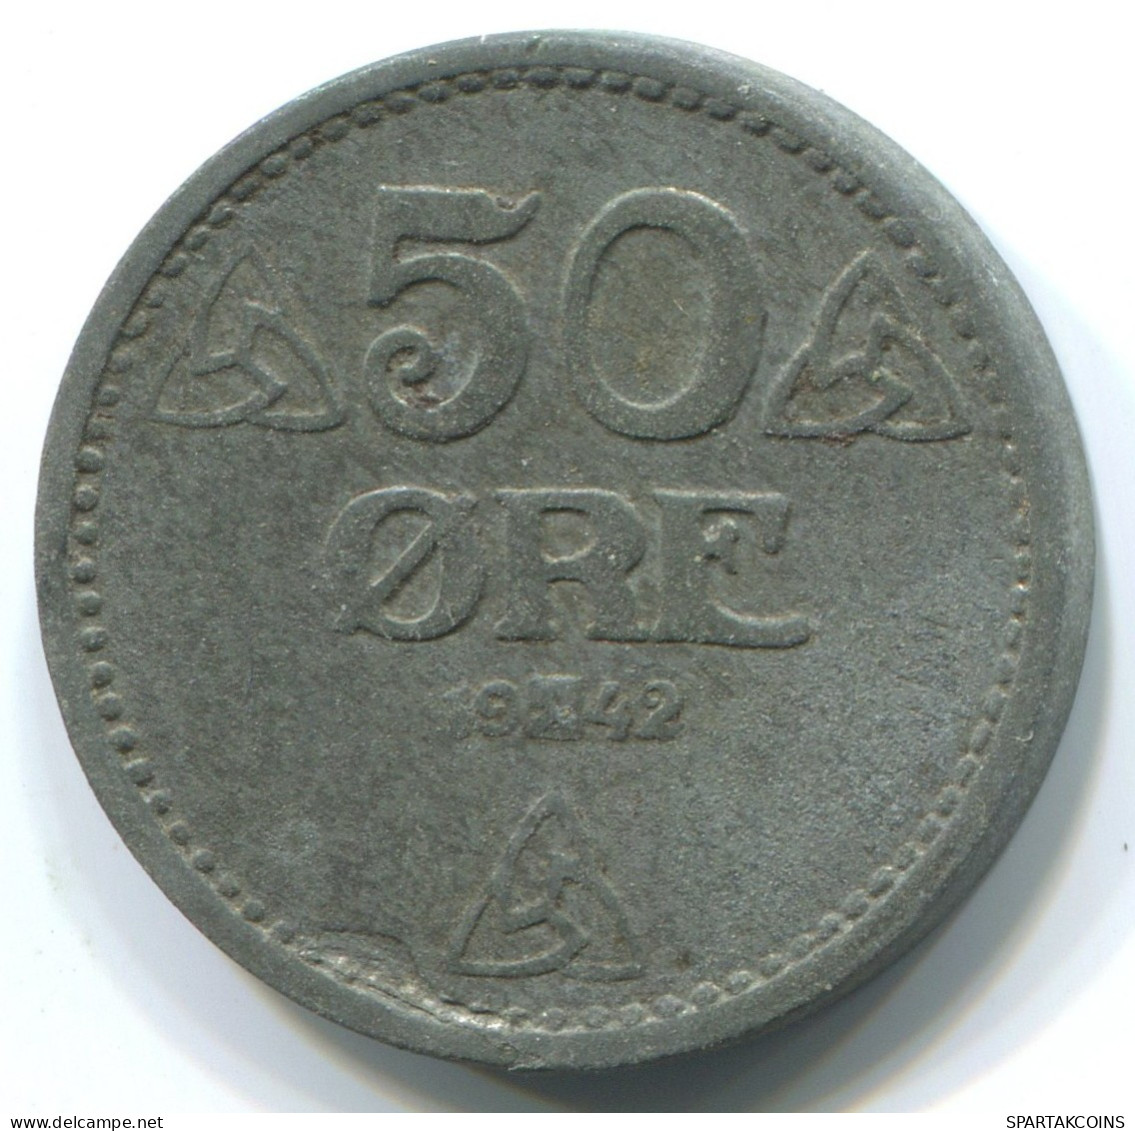 50 ORE 1942NORUEGA NORWAY Moneda #WW1037.E.A - Norwegen